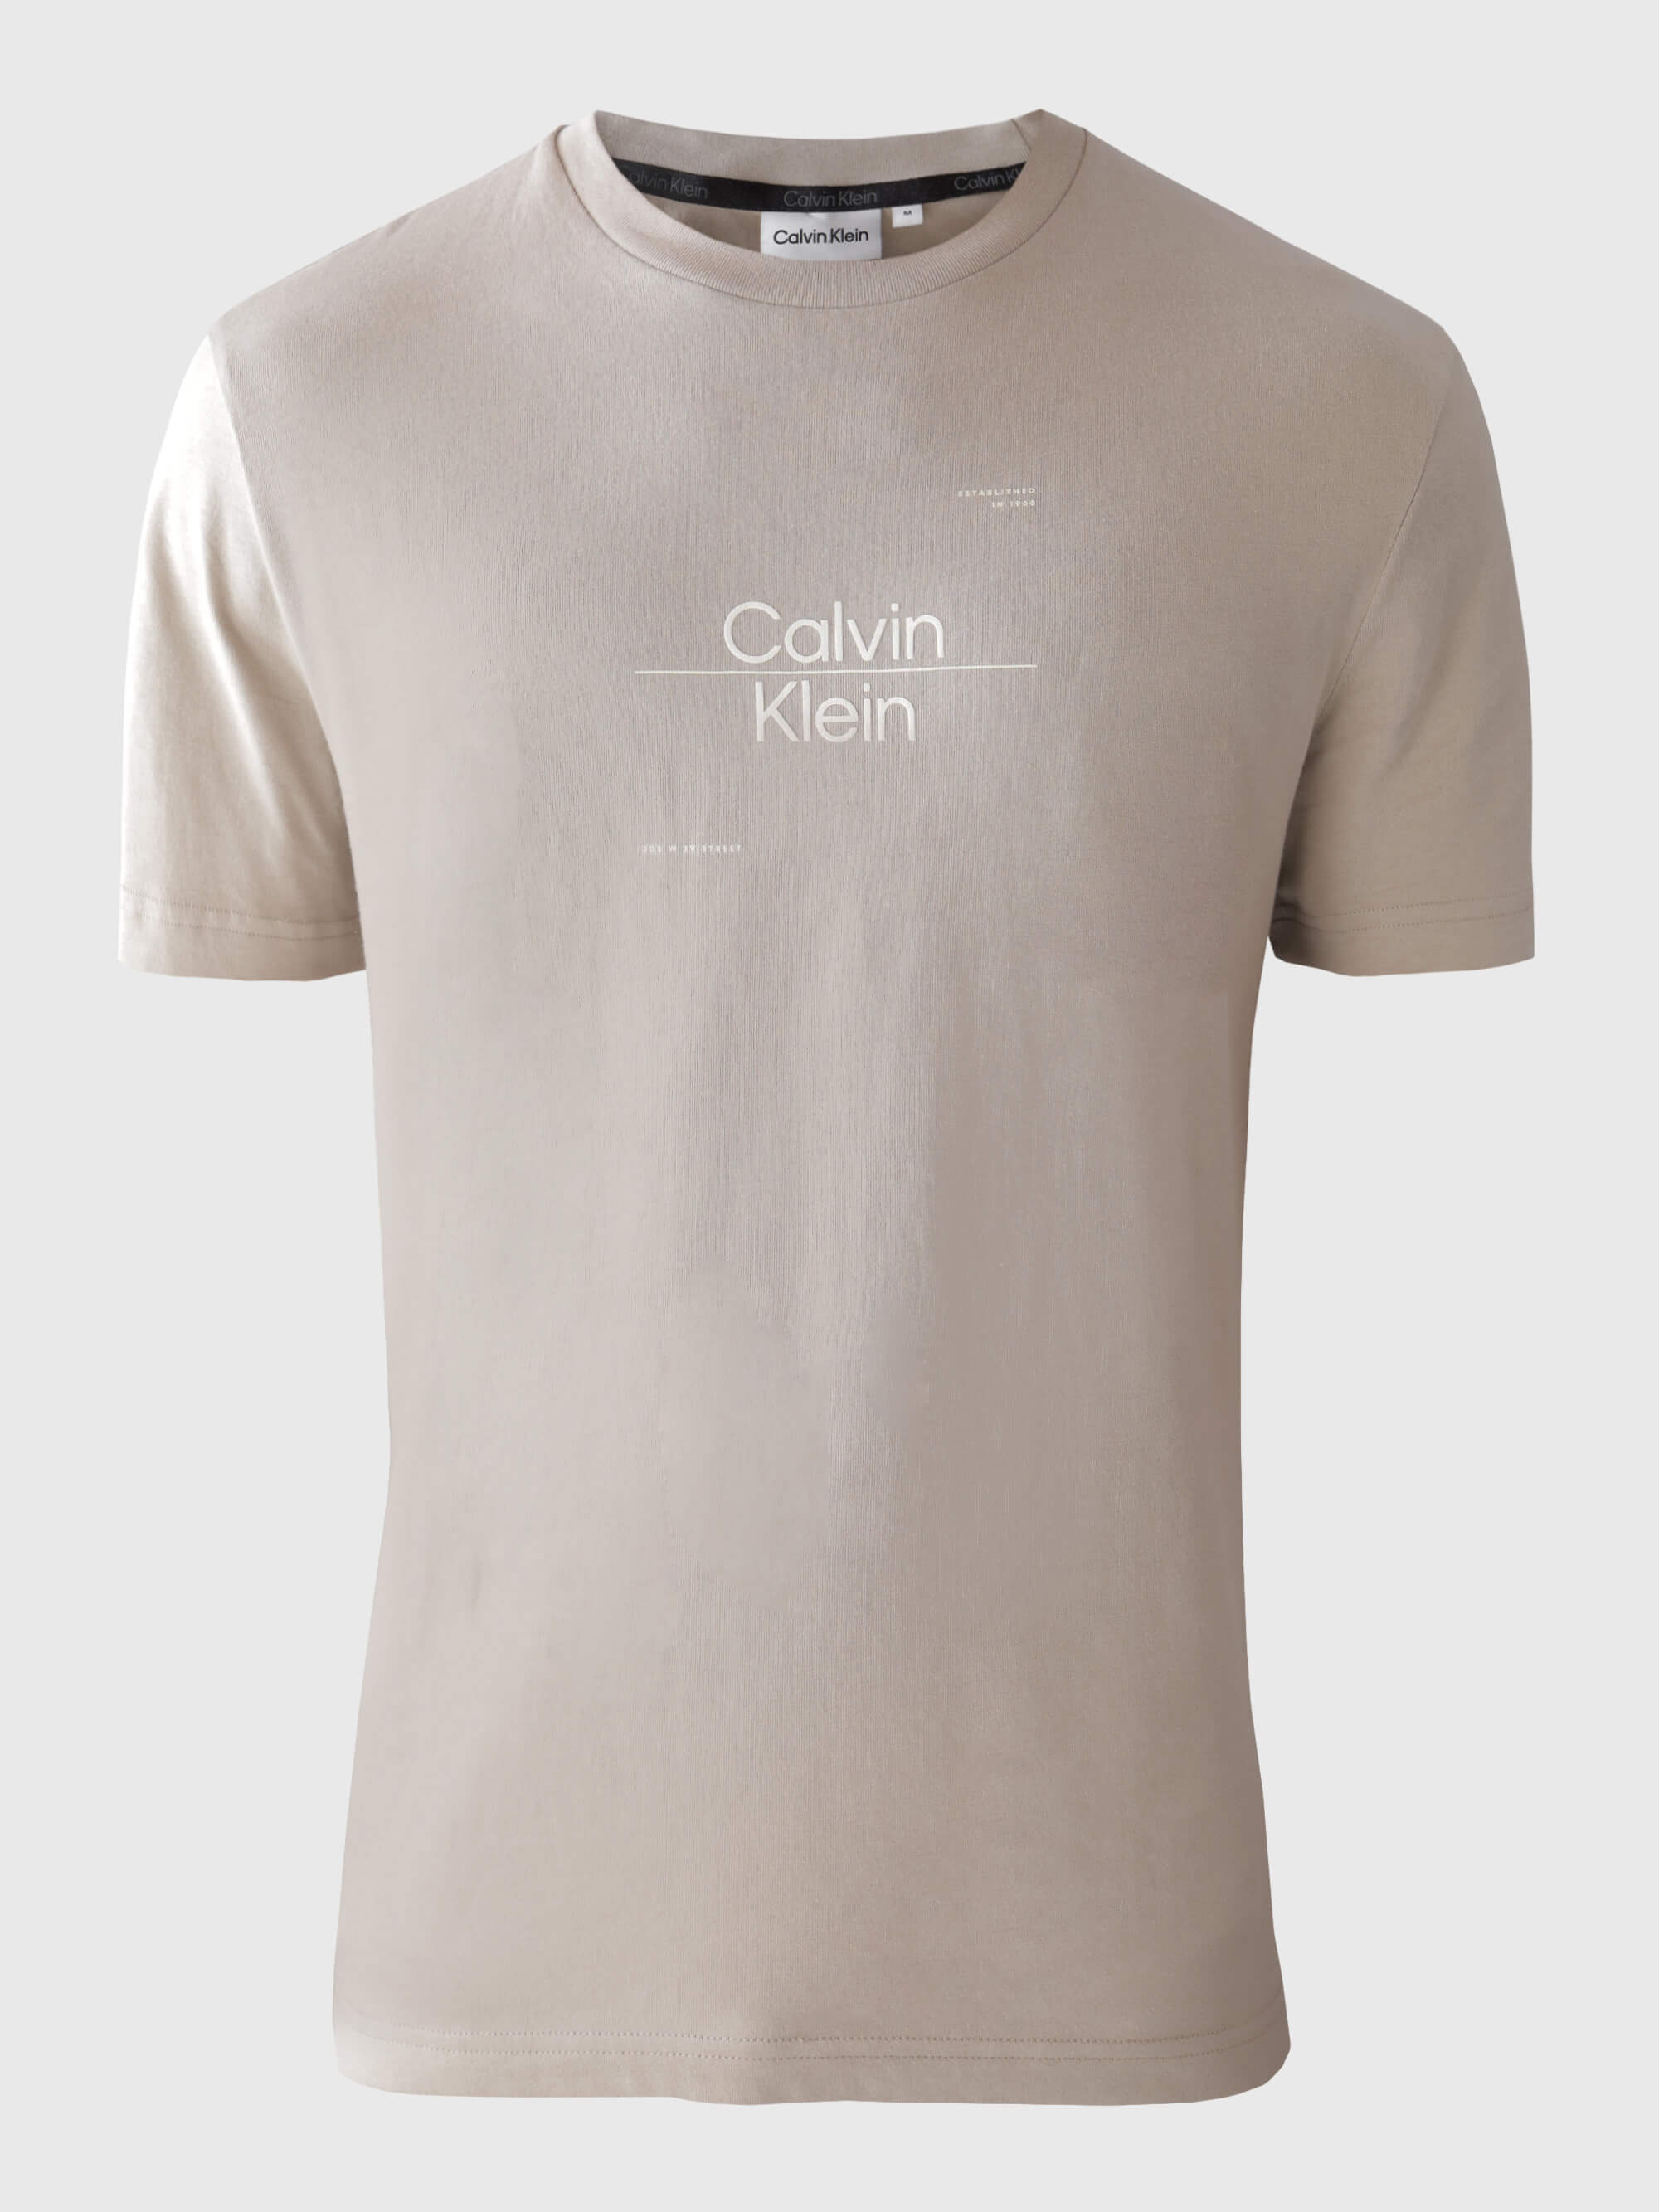 Playera Calvin Klein con Logo Estampado Hombre Gris